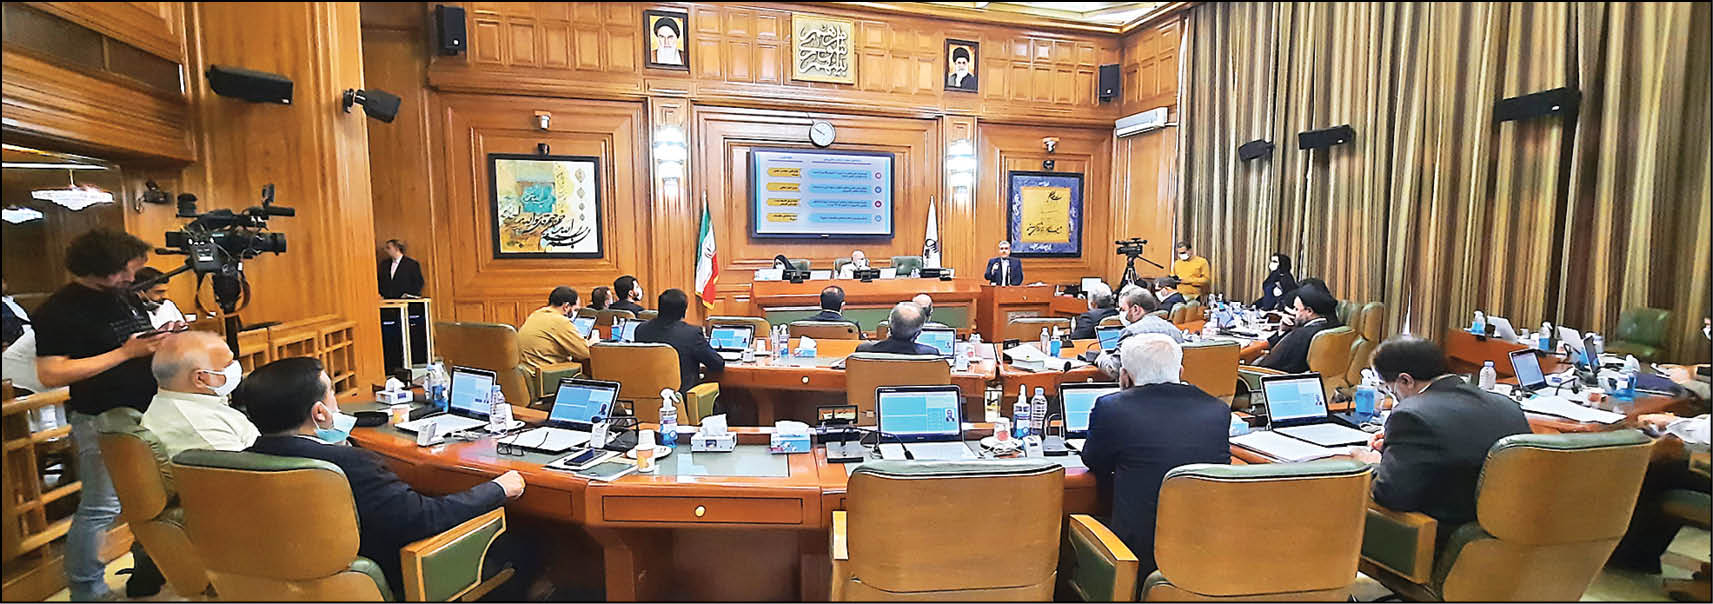 رئیس‌کل سازمان امور مالیاتی کشور با حضور در صحن پارلمان شهری گزارشی از 18برنامه تحولی این سازمان داد و بر تعاملات با شورای شهر تهران تأکید کرد